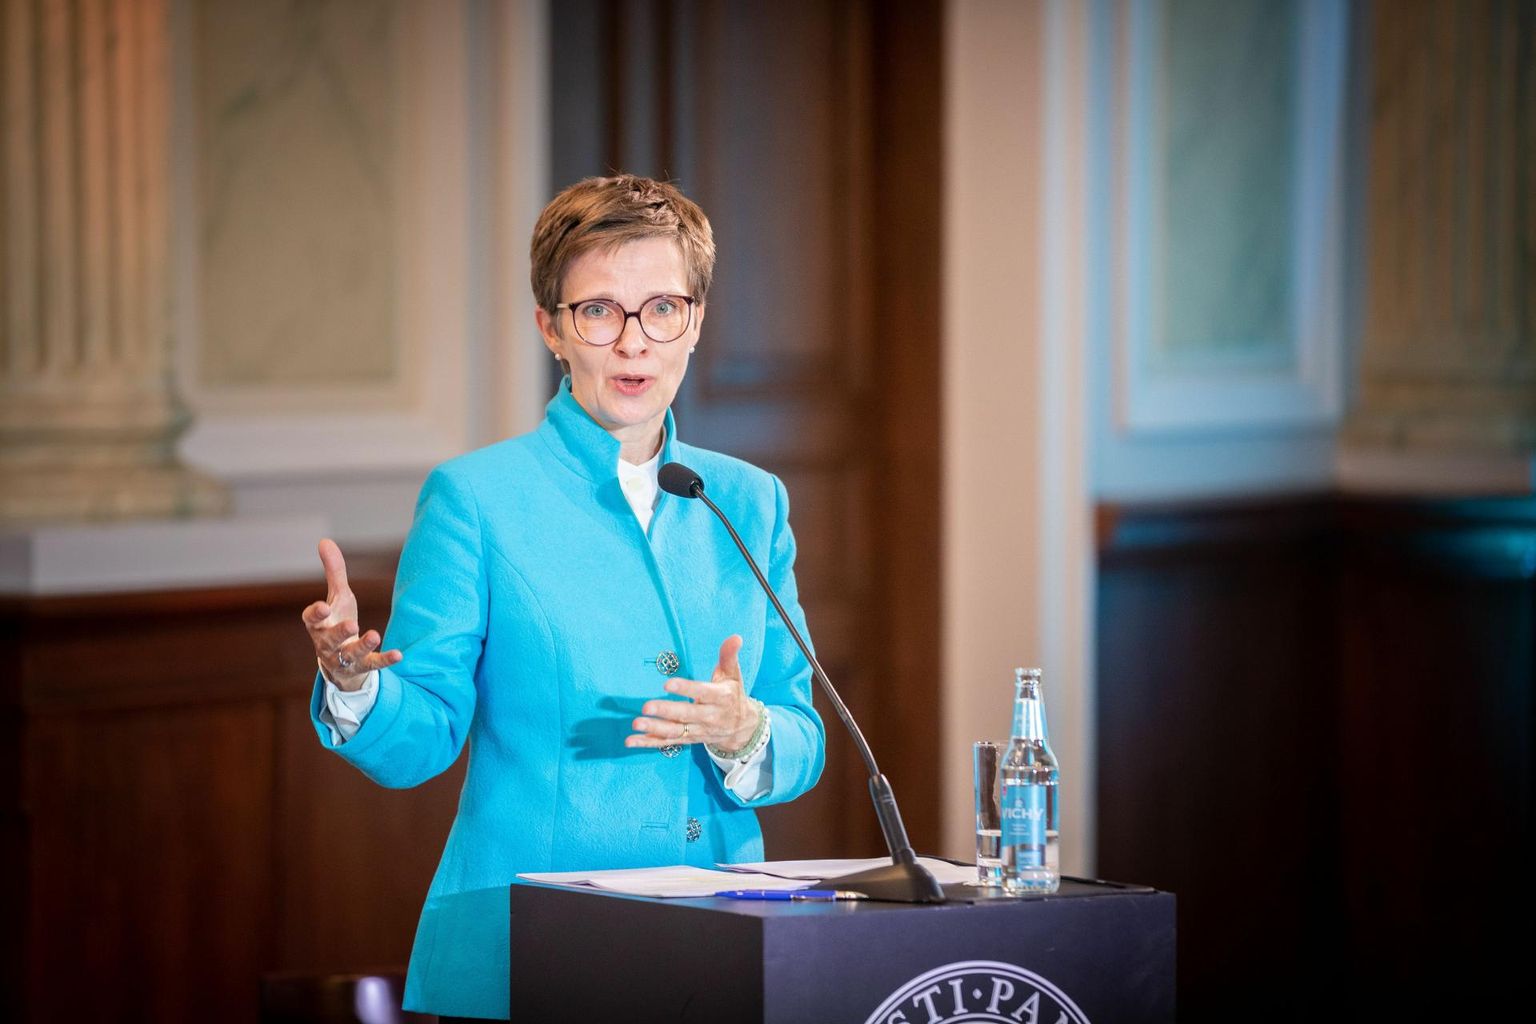 Bundesbanki asepresident Claudia Maria Buch pidas
rahareformi 30. aasta-päevale pühendatud seminaril põhi-ettekande.